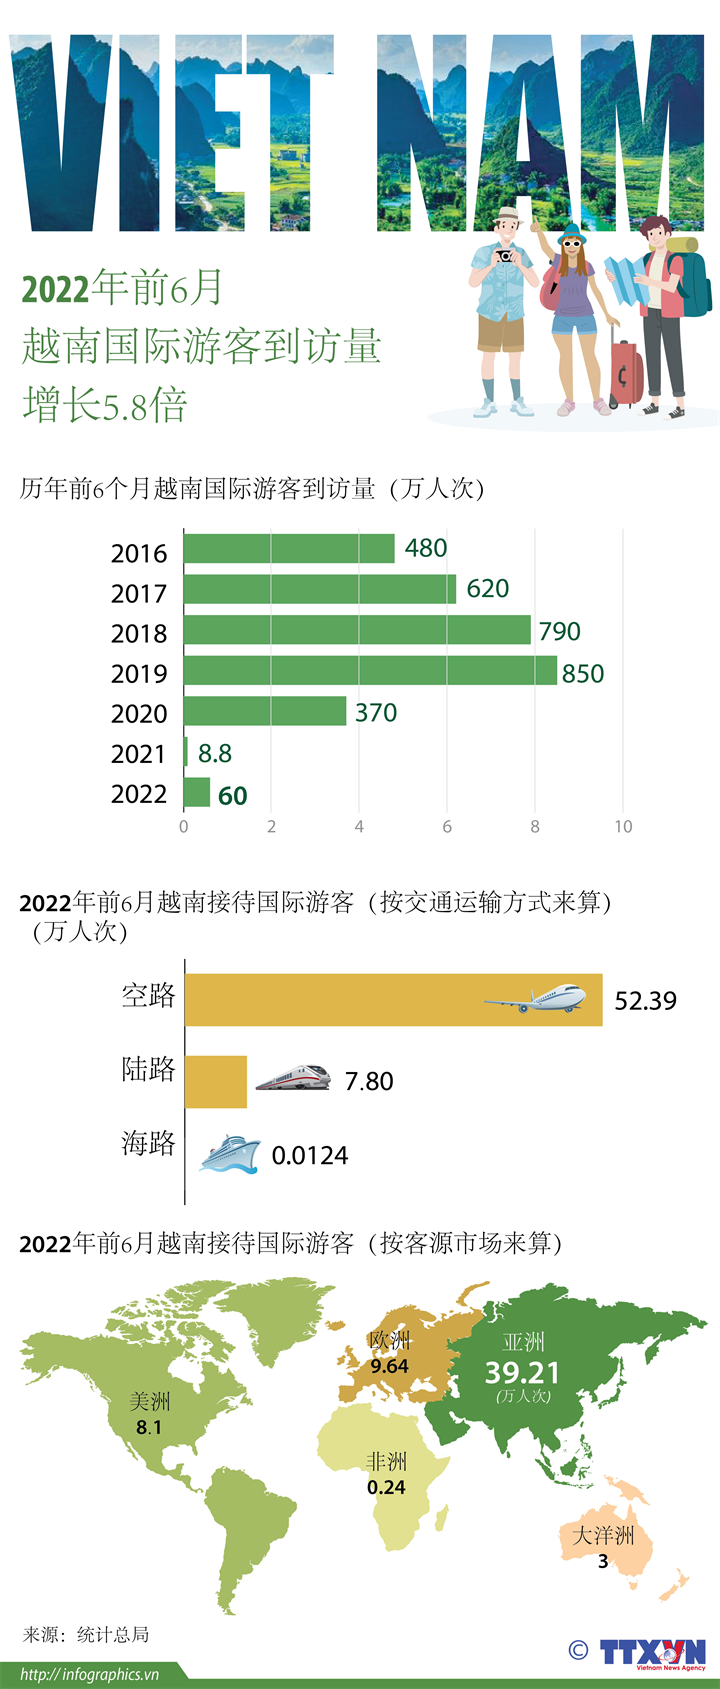 2022年前6月越南国际游客到访量增长5.8倍